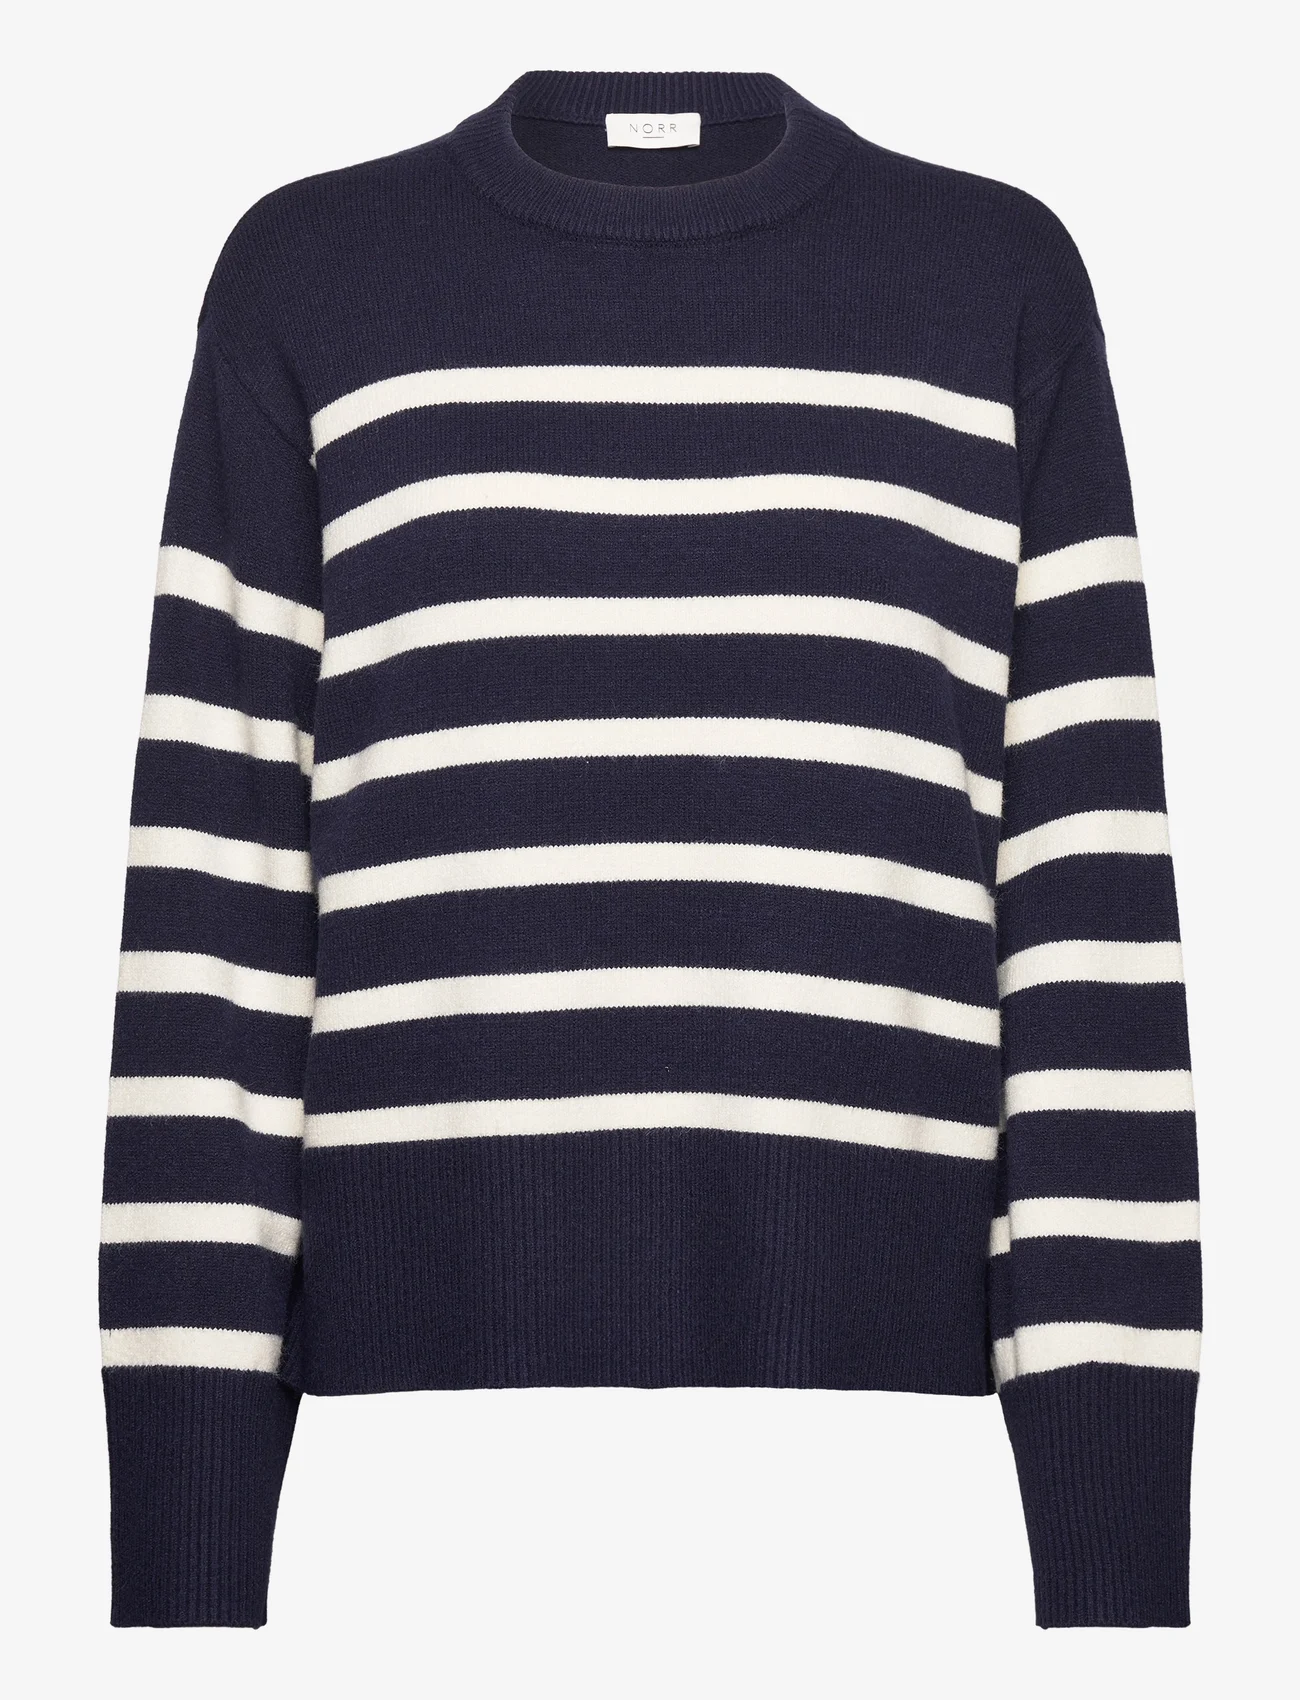 NORR - Lindsay new knit stripe top - trøjer - navy comb - 0